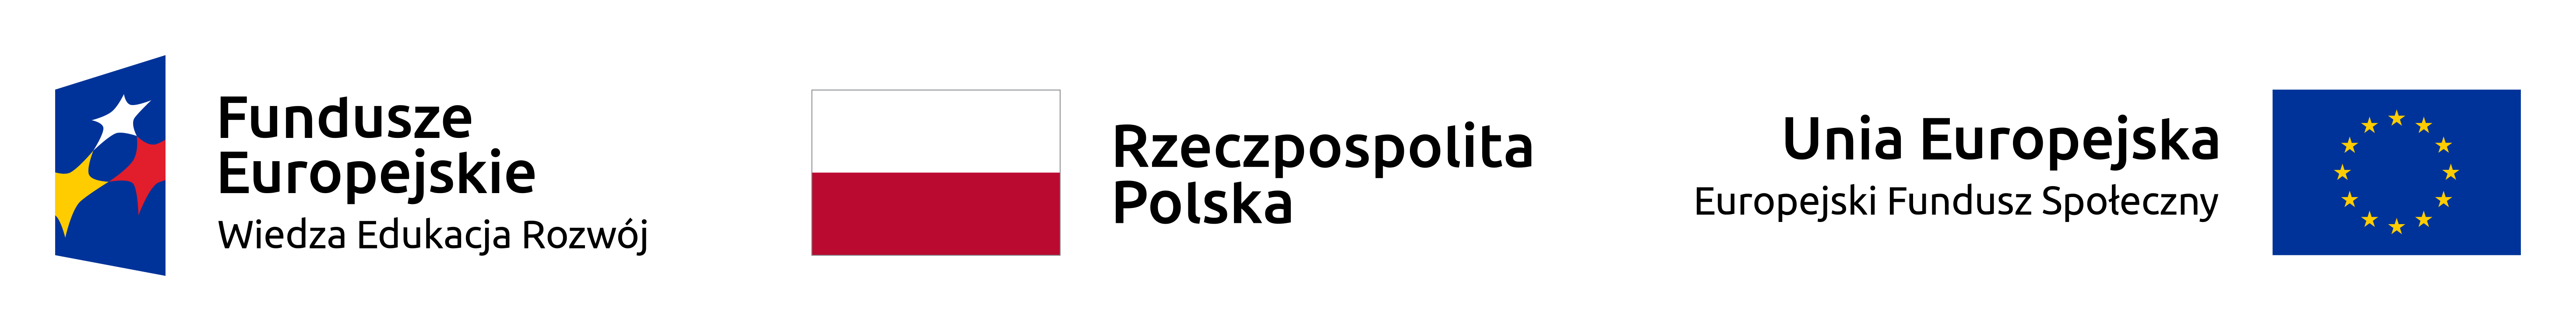 Na zdjęciu widoczne są logotyp Funduszy Europejskich oraz flagi Polski i Unii Europejskiej